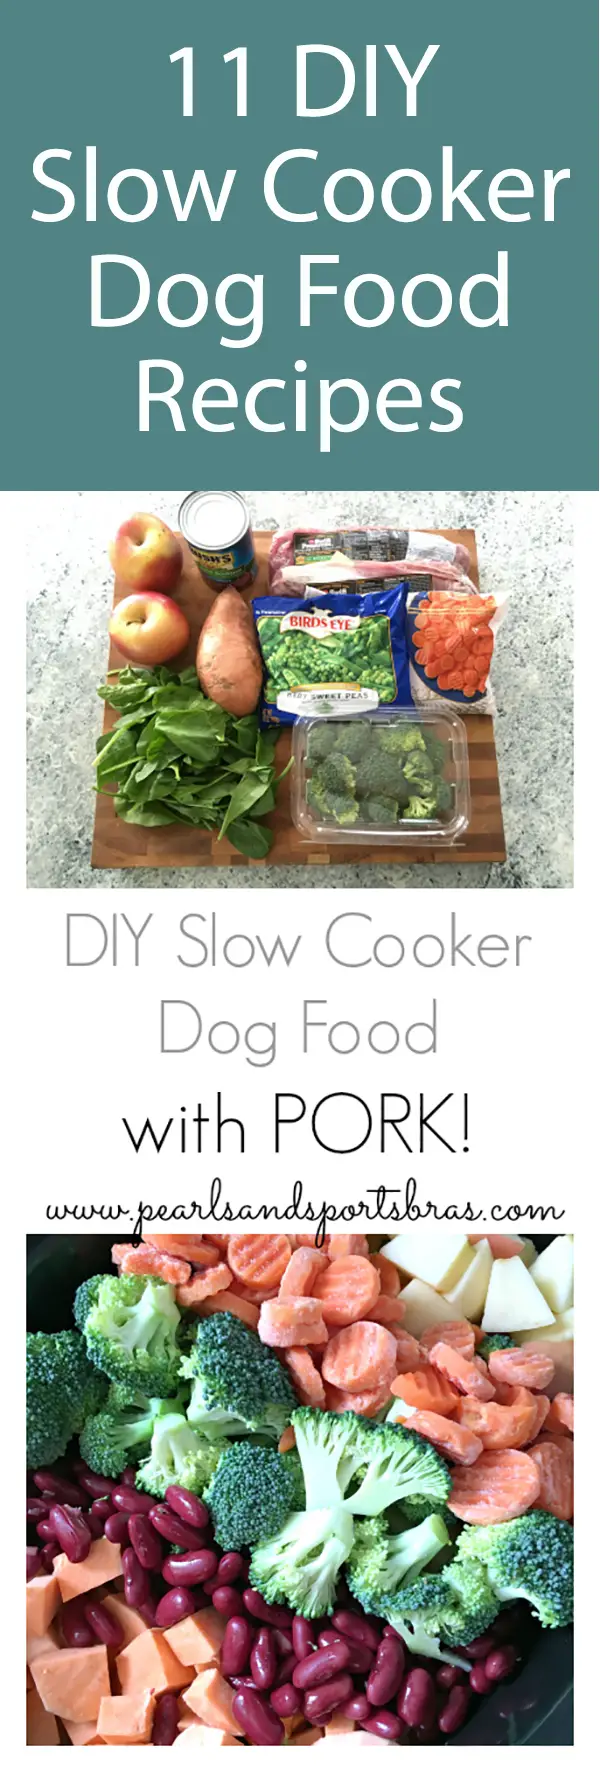 DIY Slow Cooker Dog Food With Pork